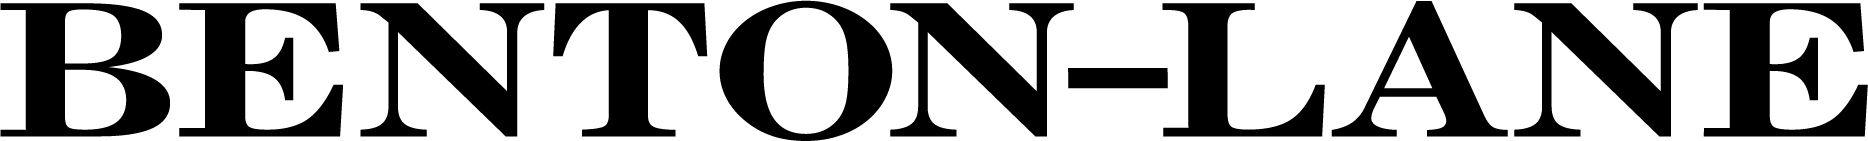 Decorative Image Benton-Lane Logo